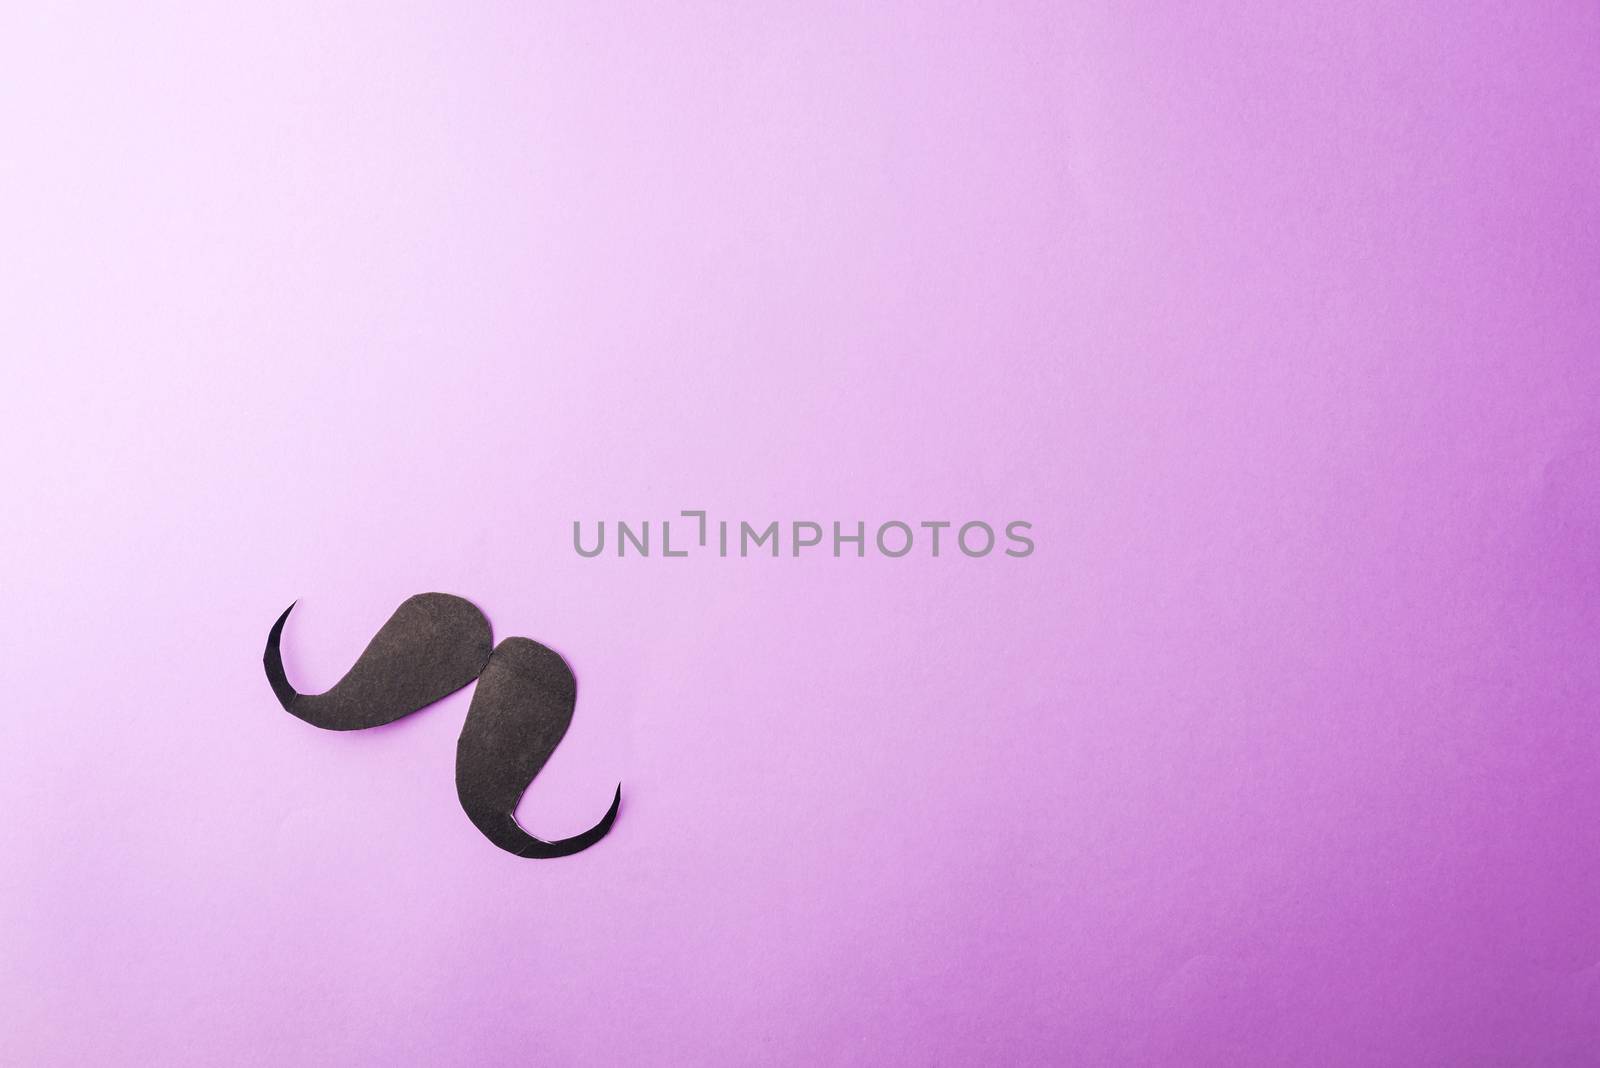 Black mustache paper on purple by Sorapop